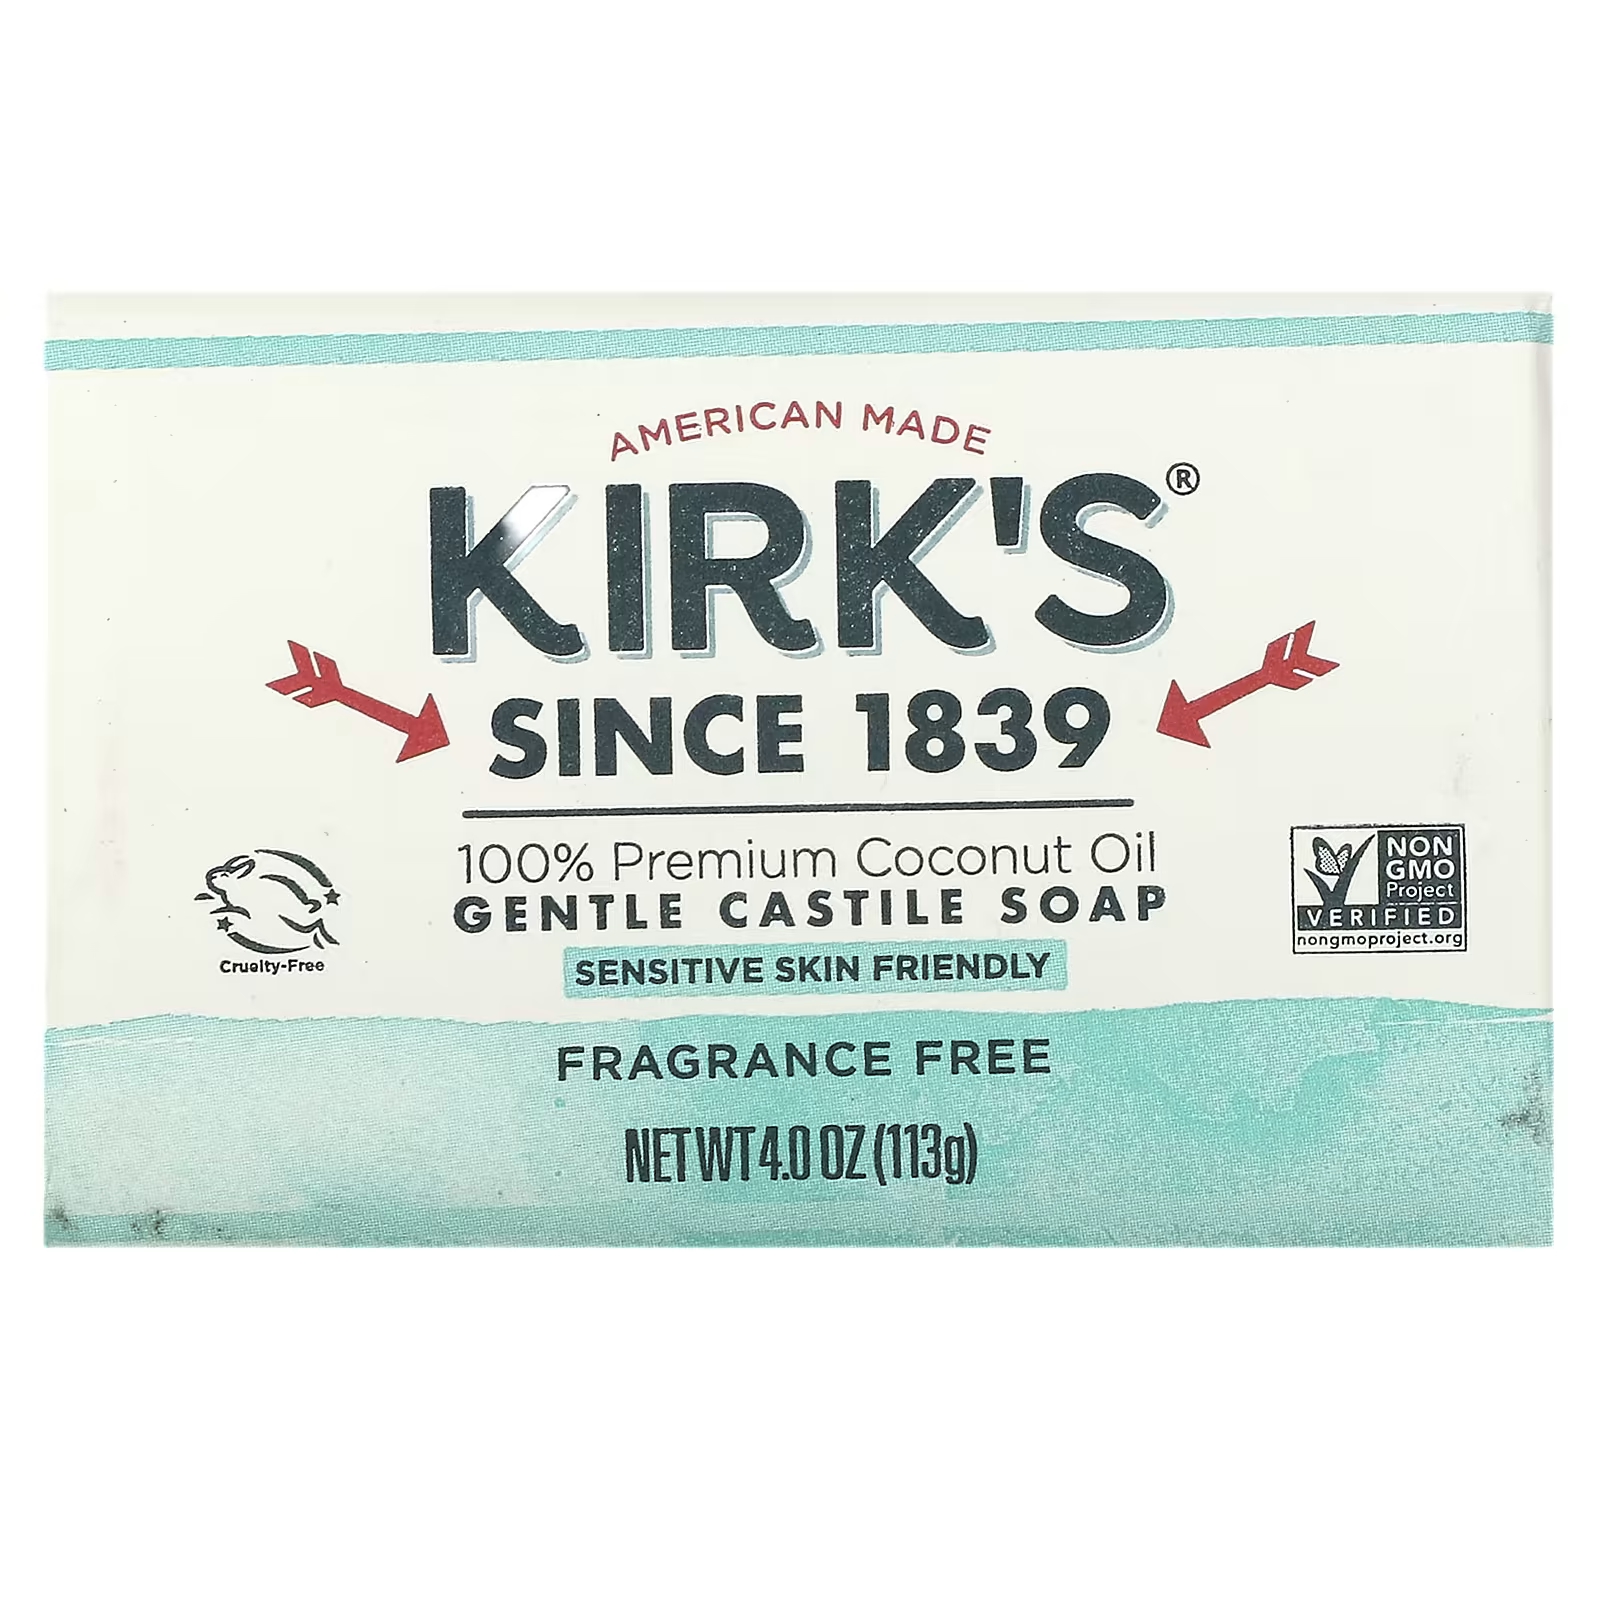 Kirks 100% кокосовое масло премиум-класса, нежное кастильское мыло без запаха, 4 унции (113 г)